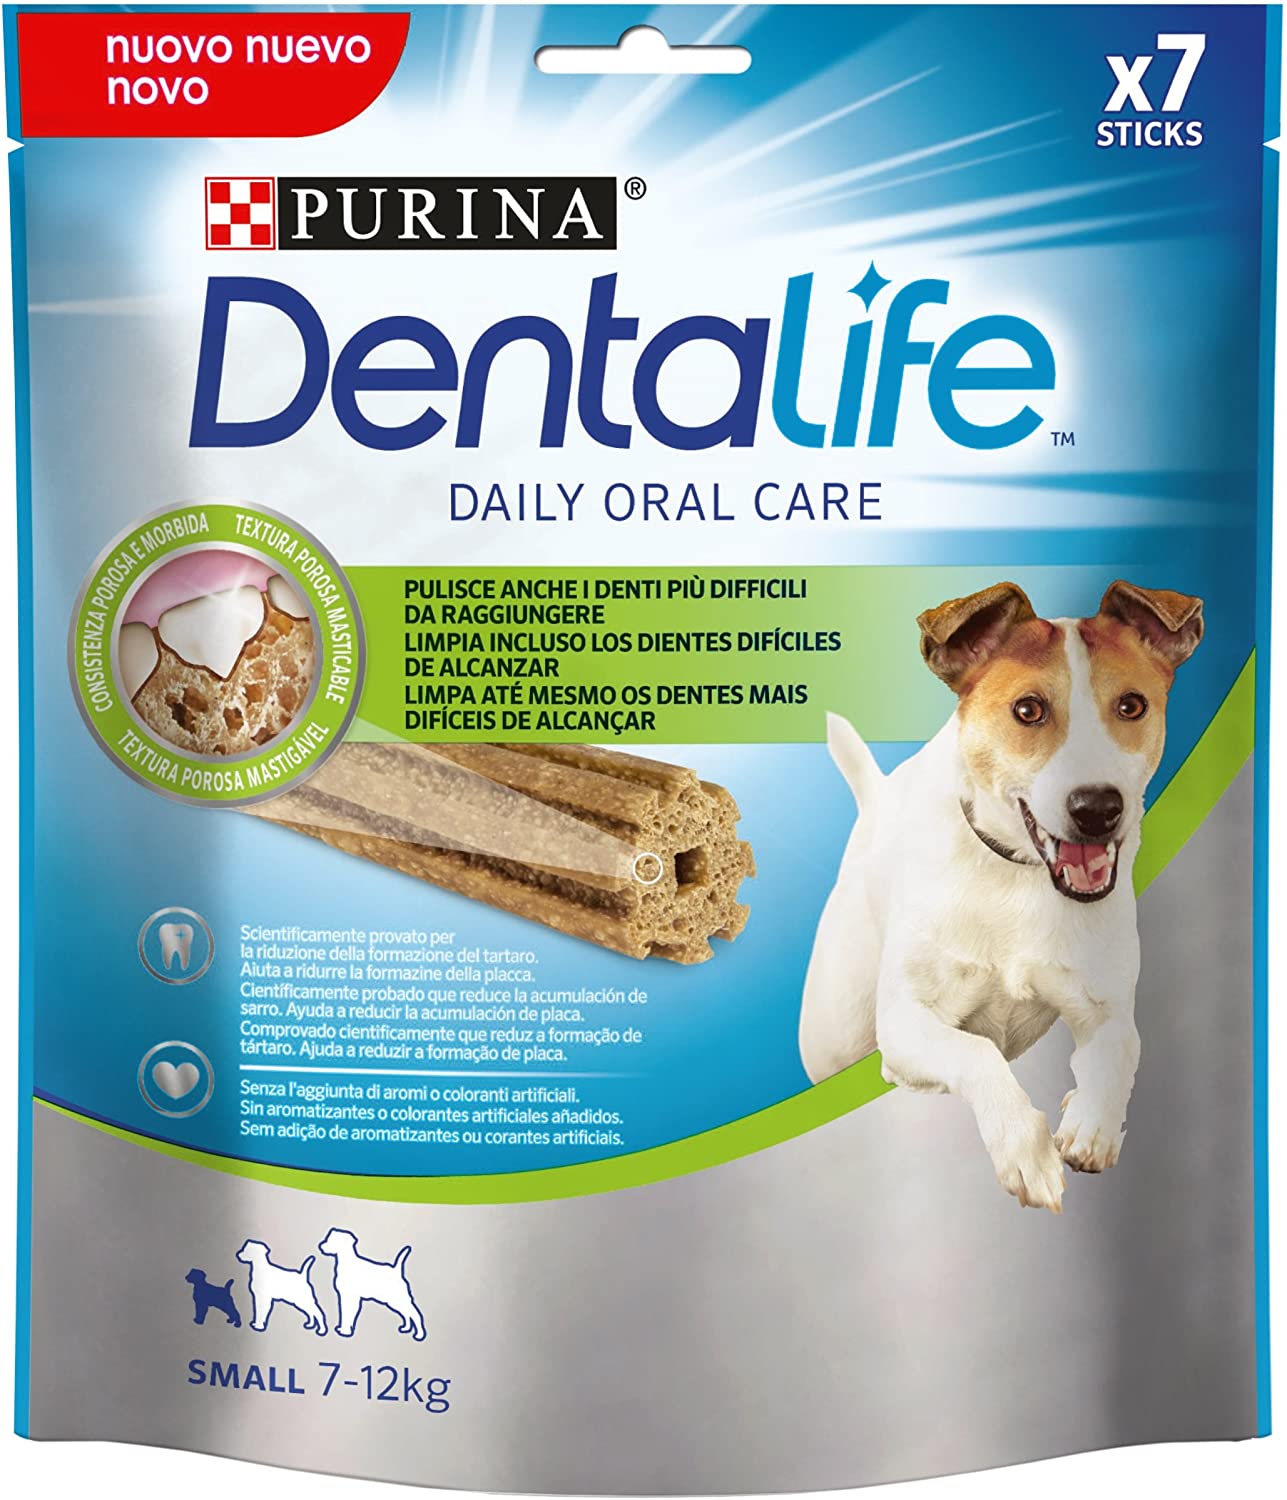  Purina Dentalife golosina dental para Perro Pequeño, 5 paquetes de 7 sticks, 5x115g 